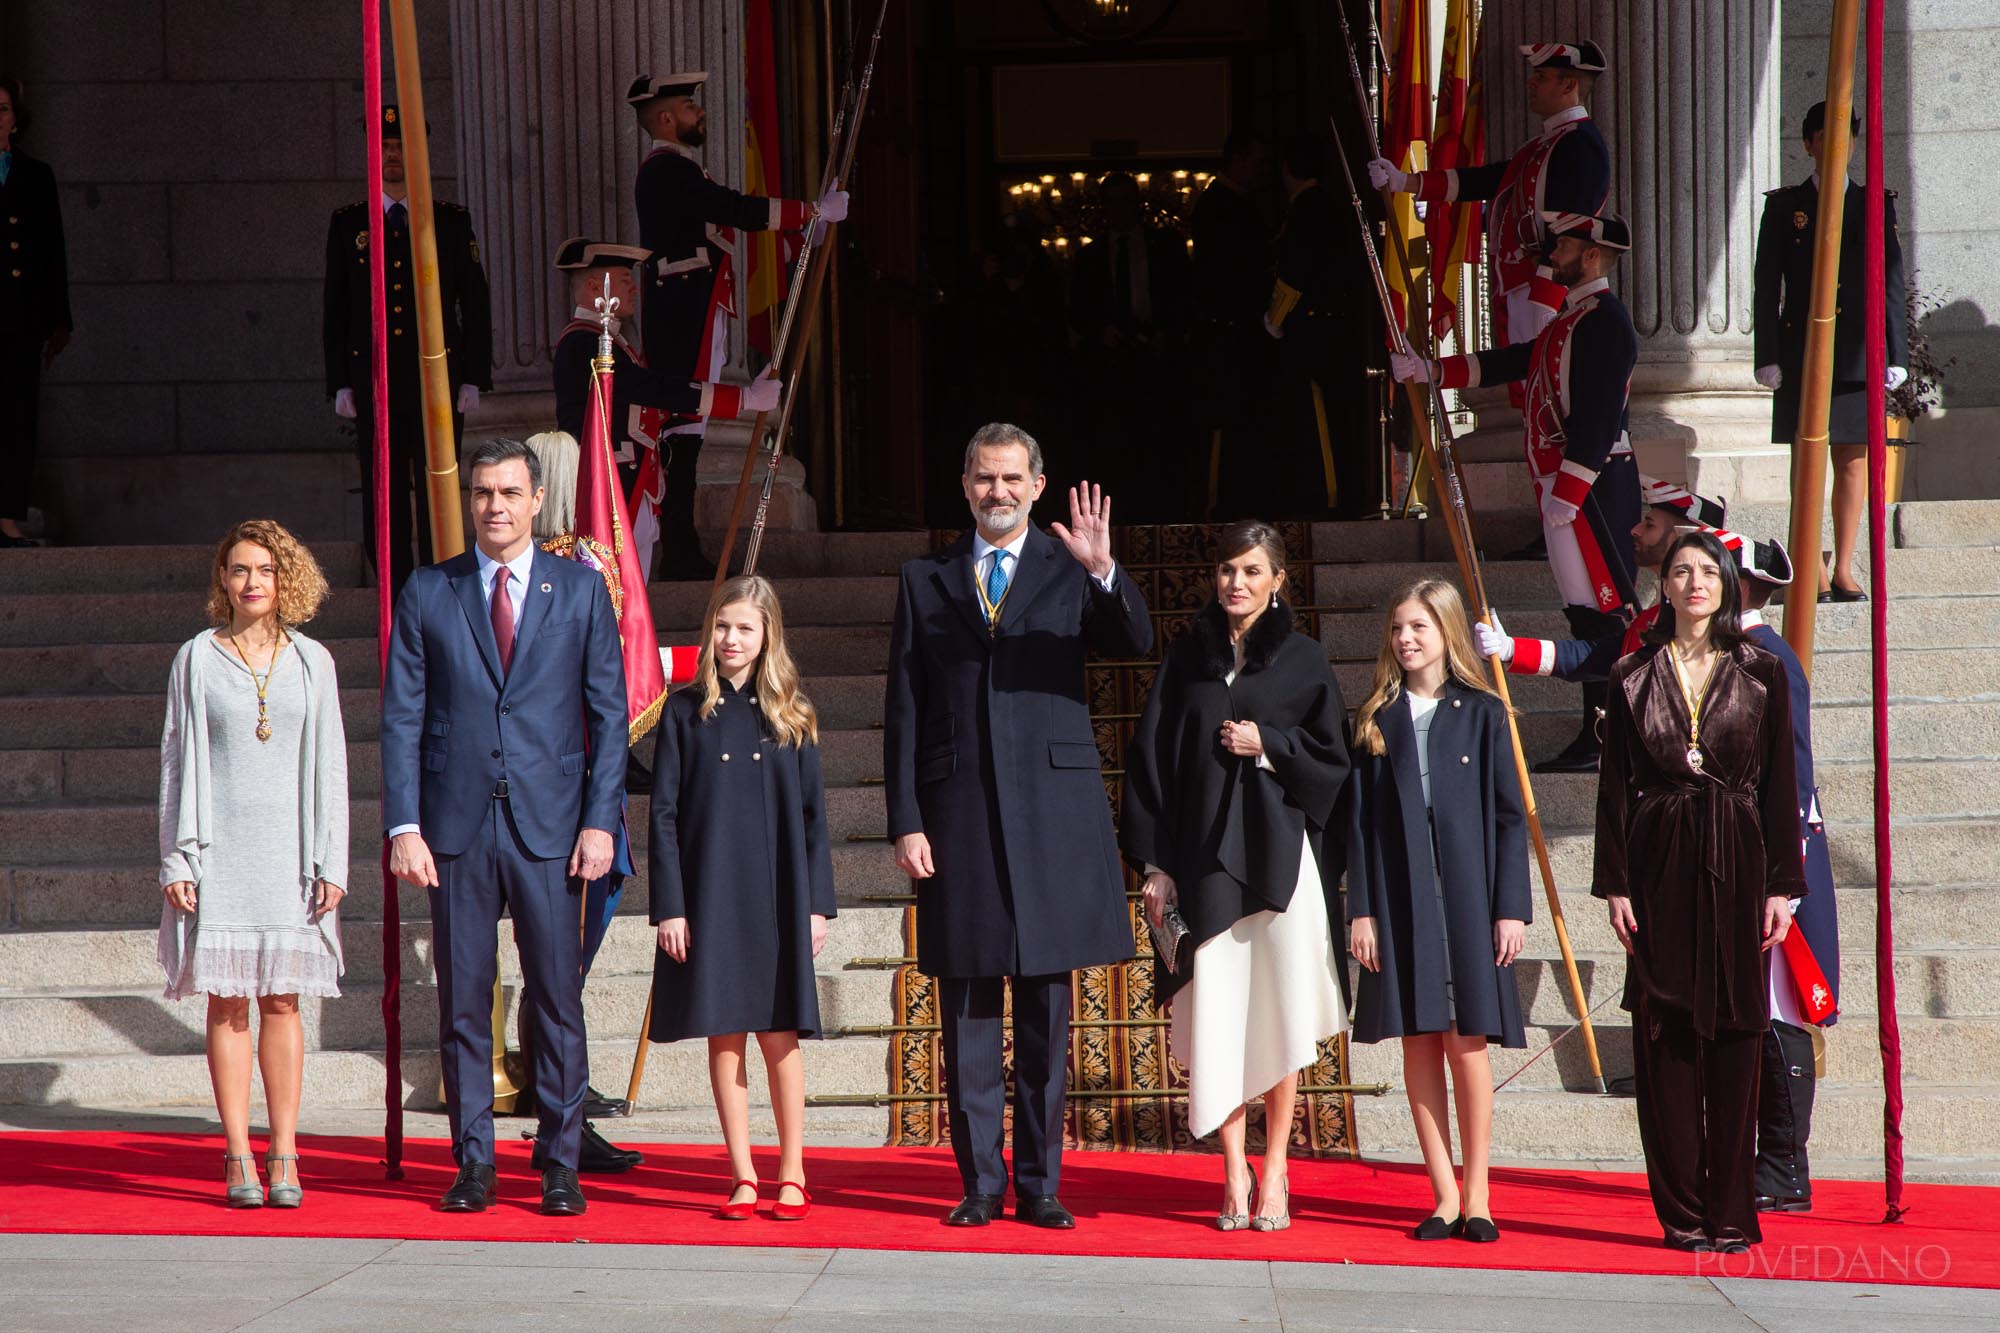 La Familia Real junto al Presidente del Gobierno y a las Presidentas de ambas Cámaras en la escalinata antes de entrar en el Palacio del Congreso de los Diputados.